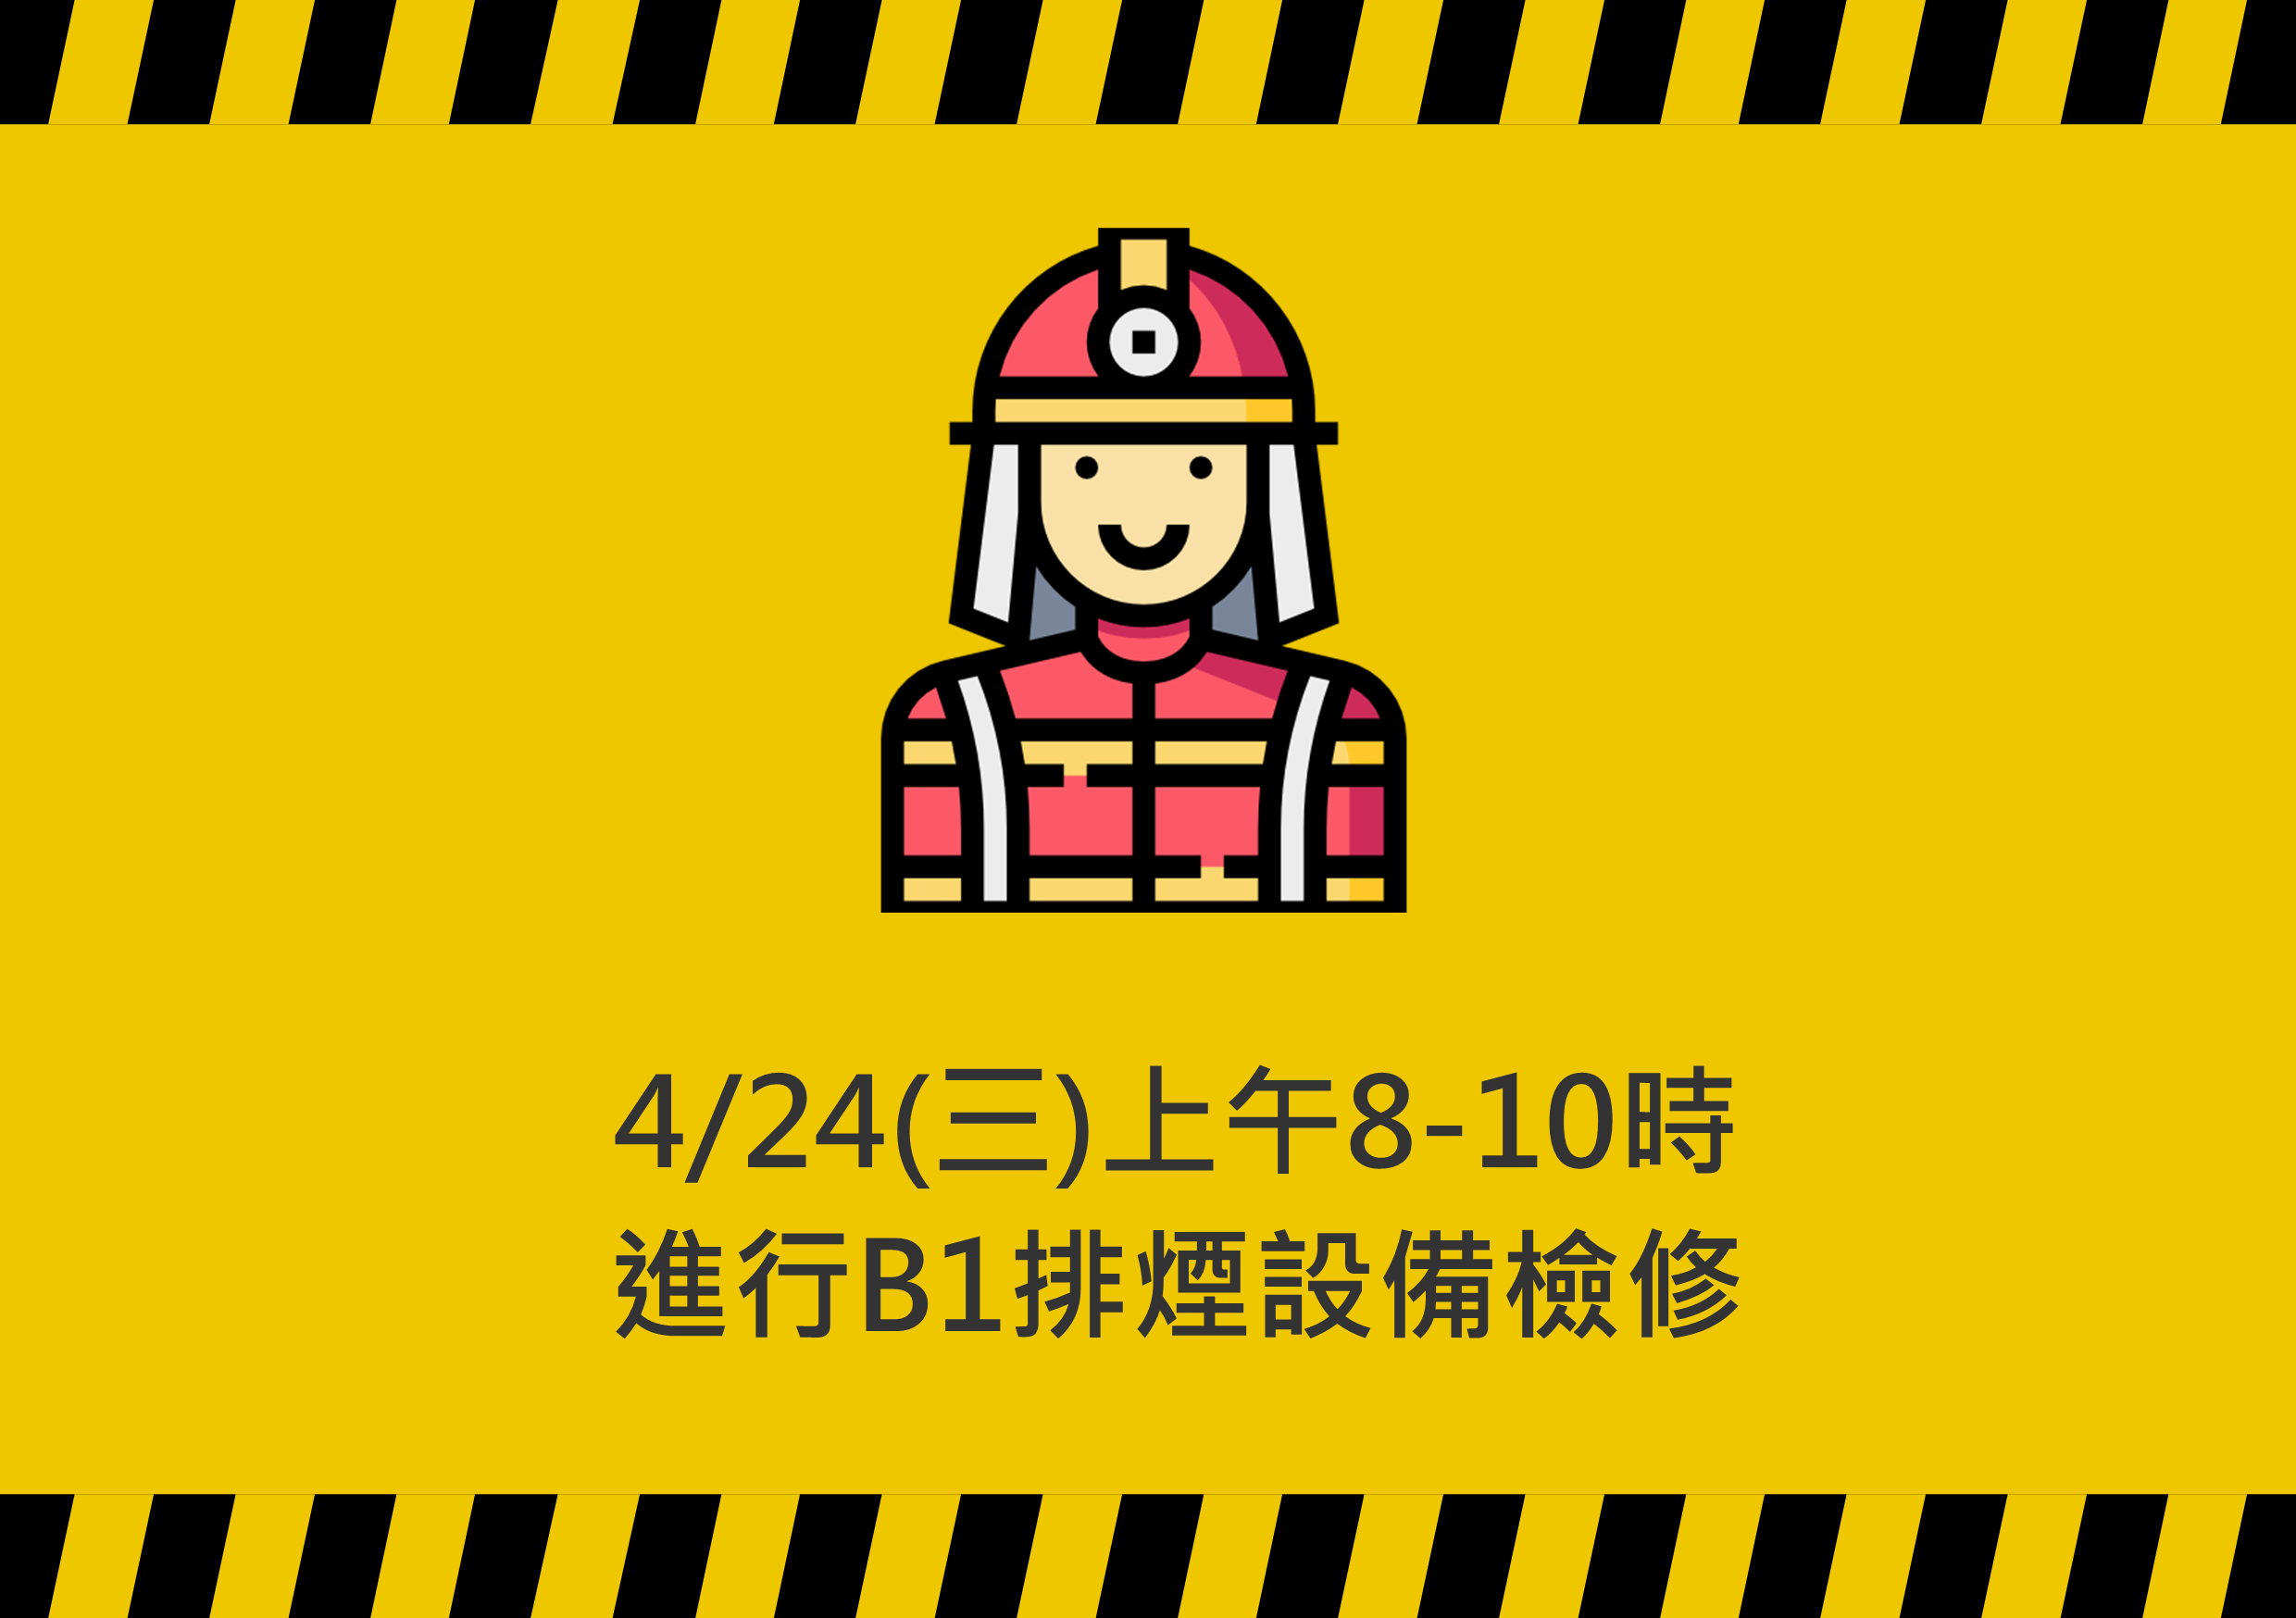 【消防檢修公告】4/24(三)上午8-10時進行B1排煙設備檢修